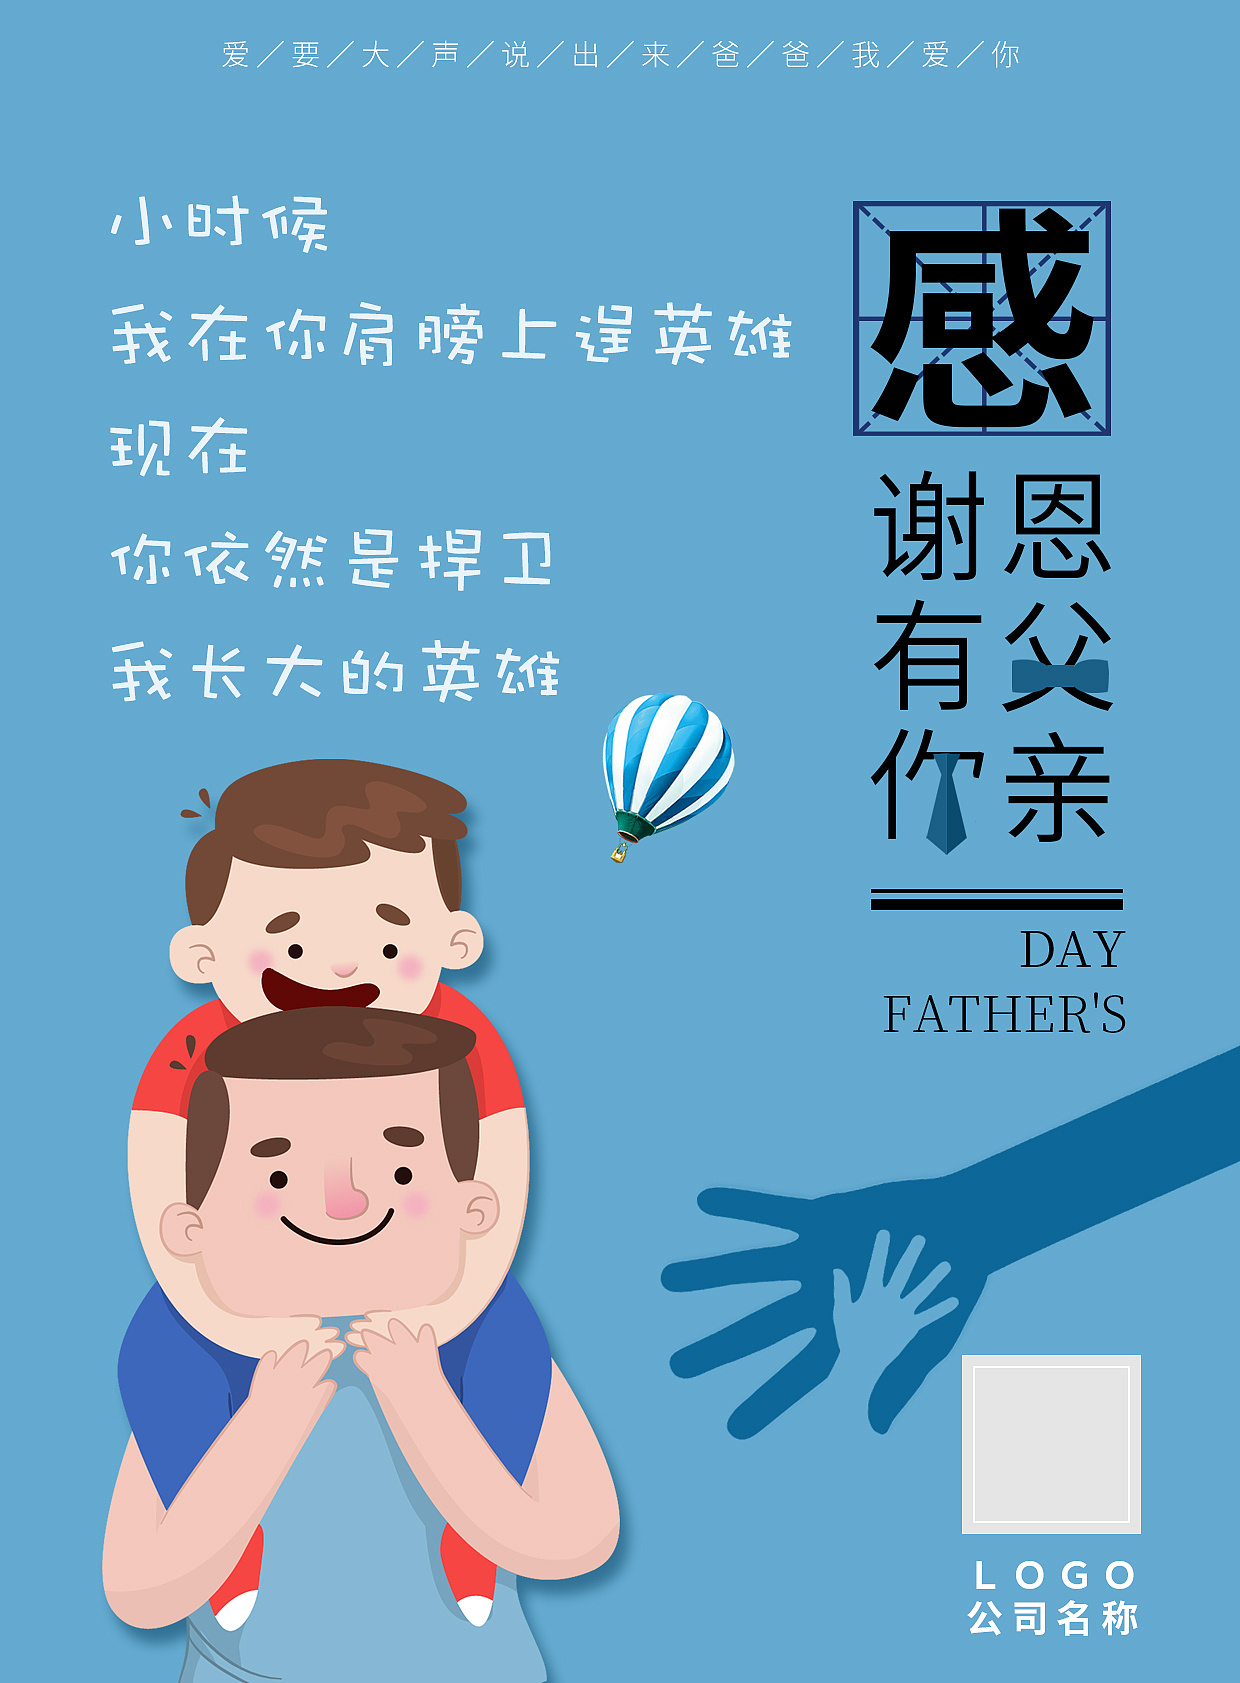 父亲节节日祝福插画手机海报_图片模板素材-稿定设计